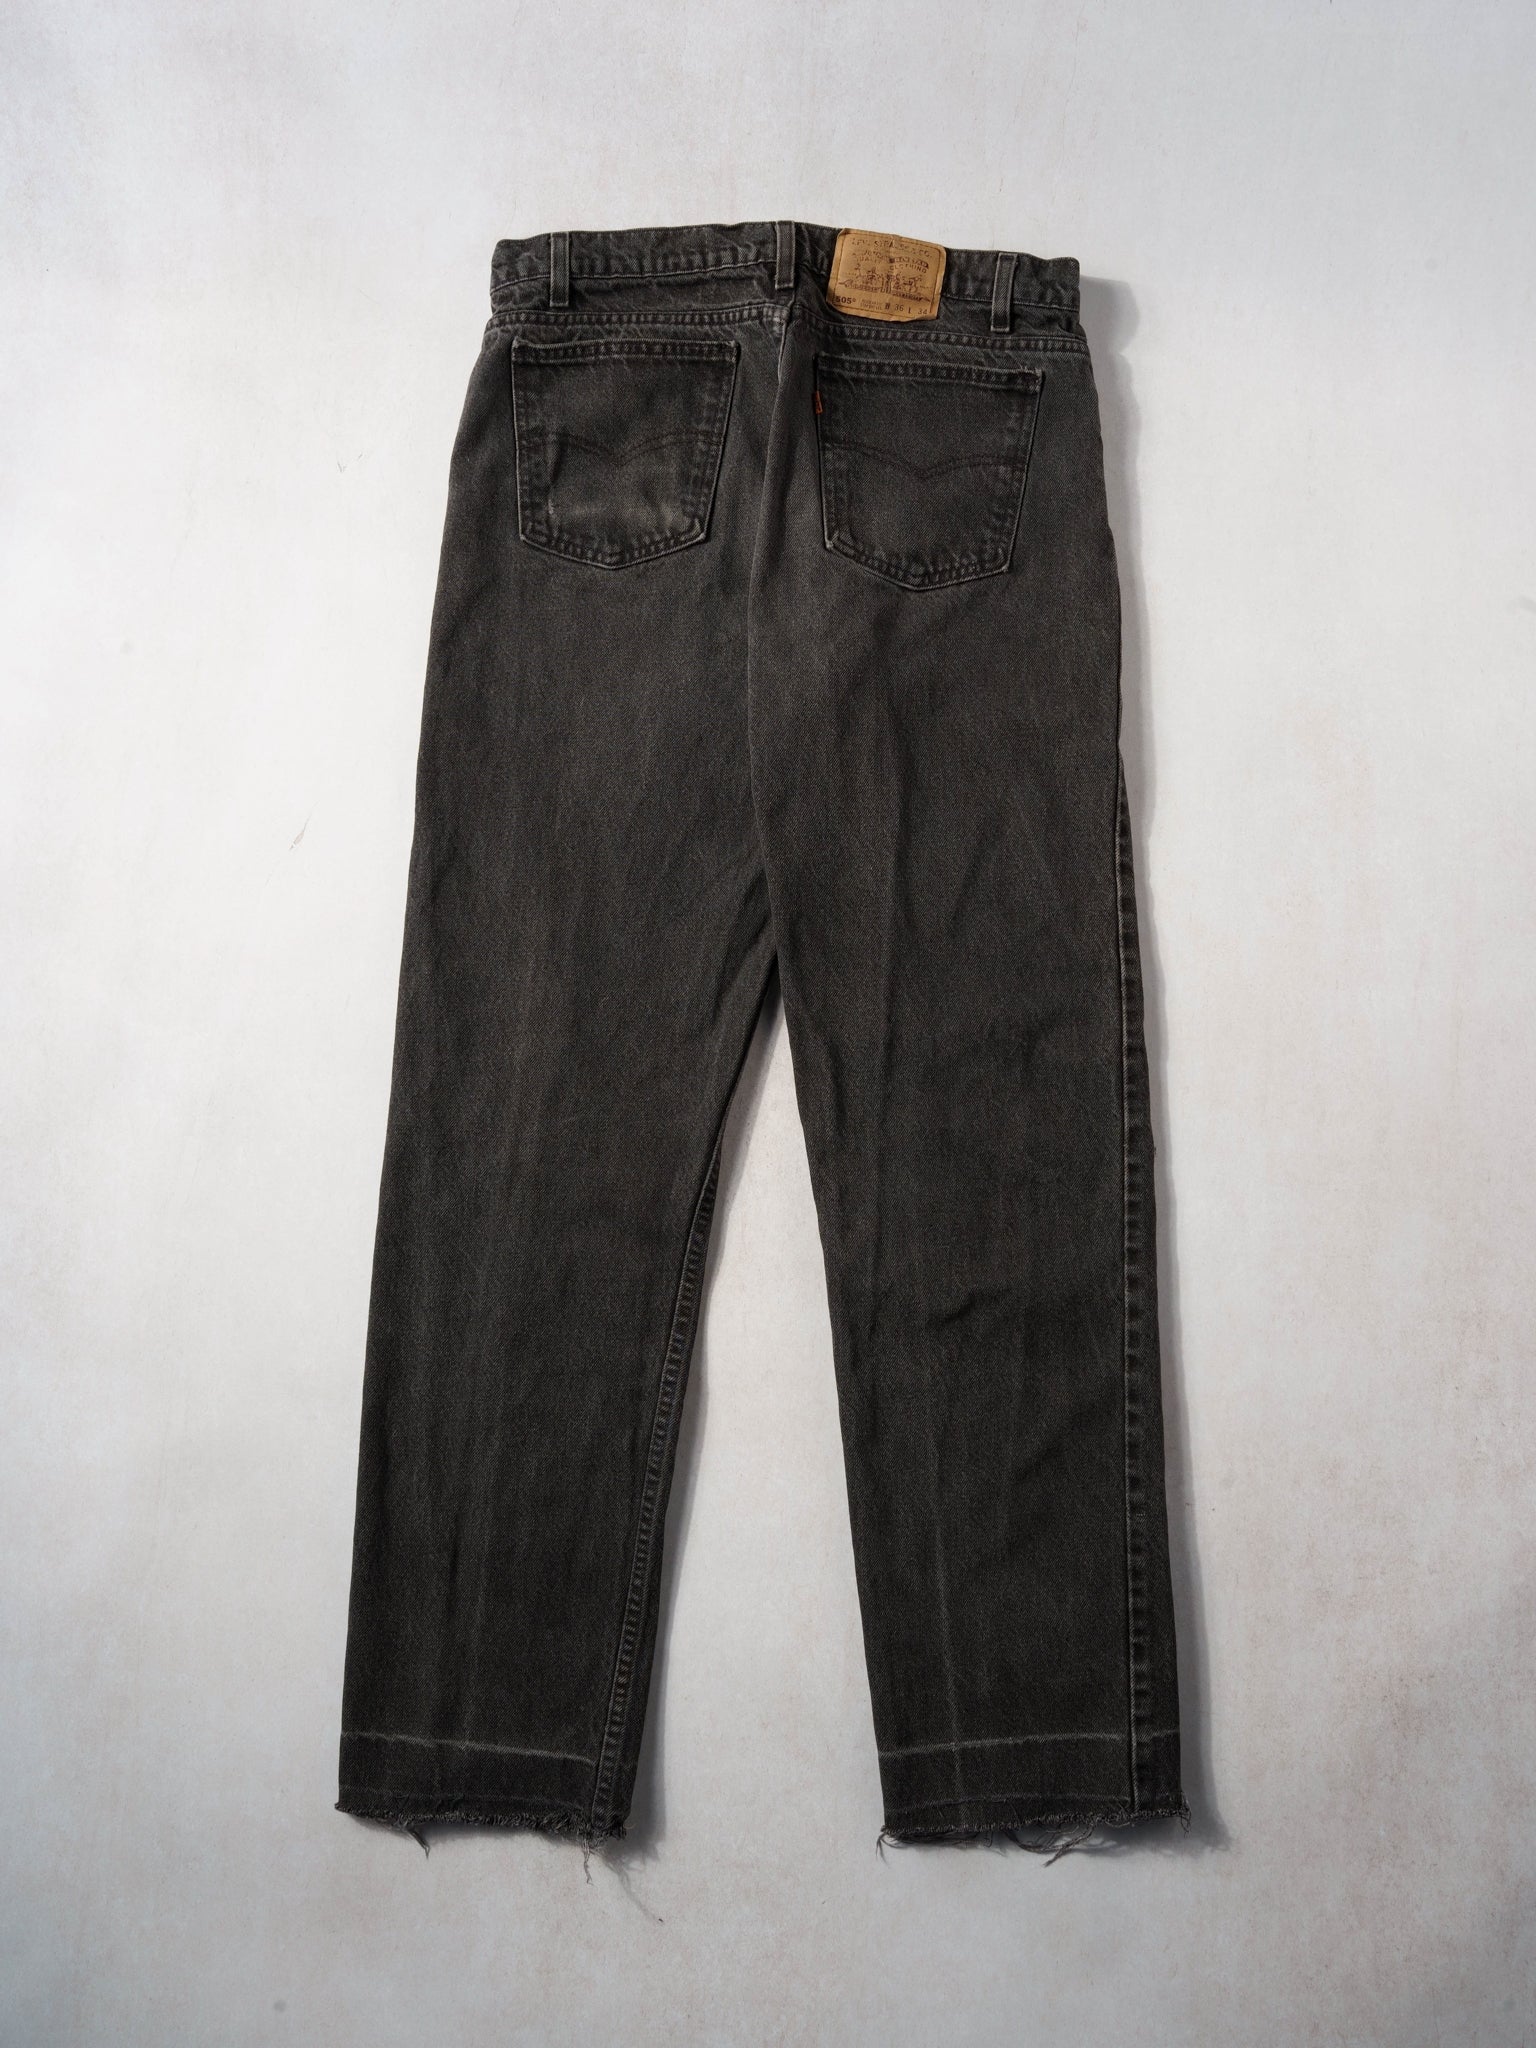 Vintage 70s Black Levi's 505 Denim Jeans (34x32)